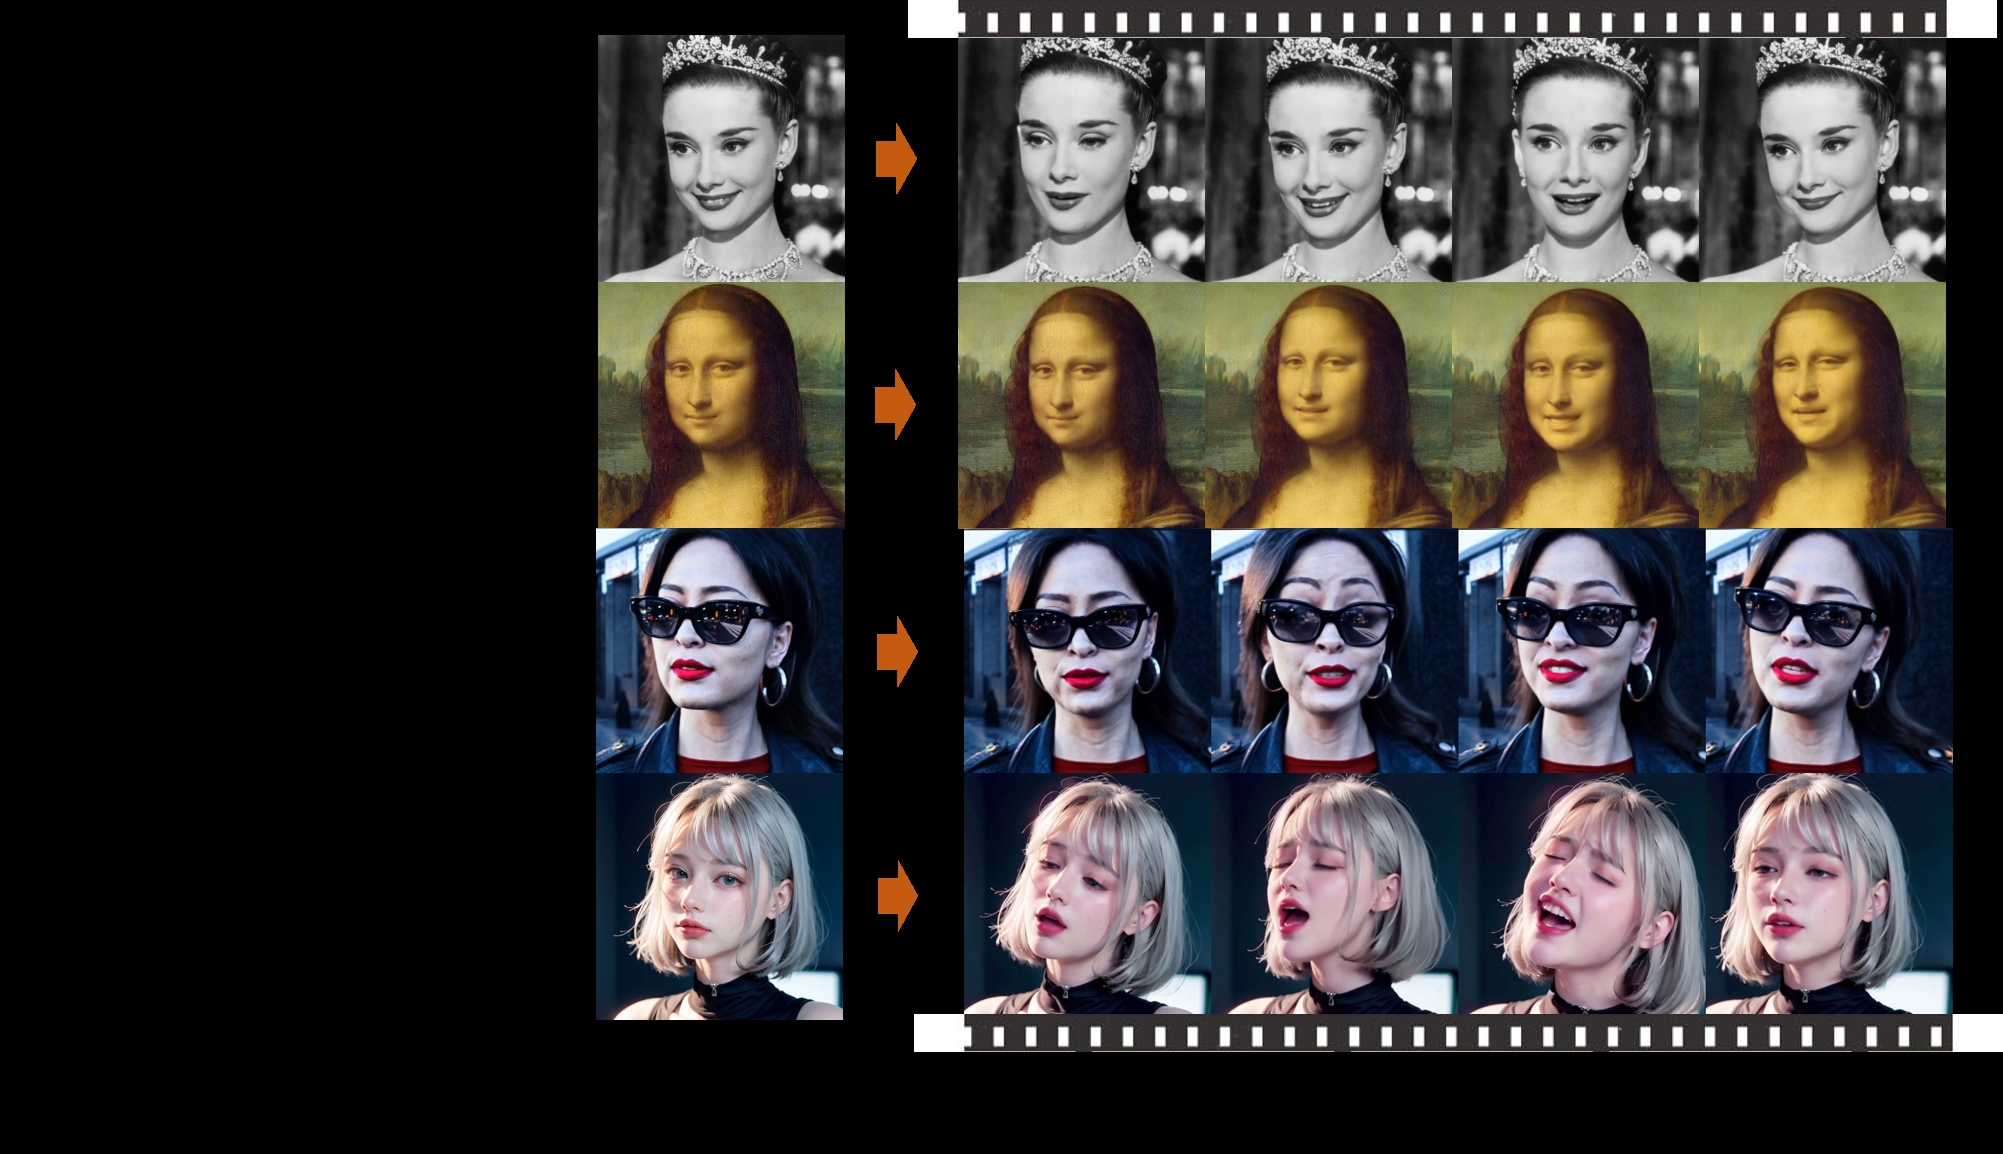 EMO: Retratos expresivos que hablan y cantan a través de la IA